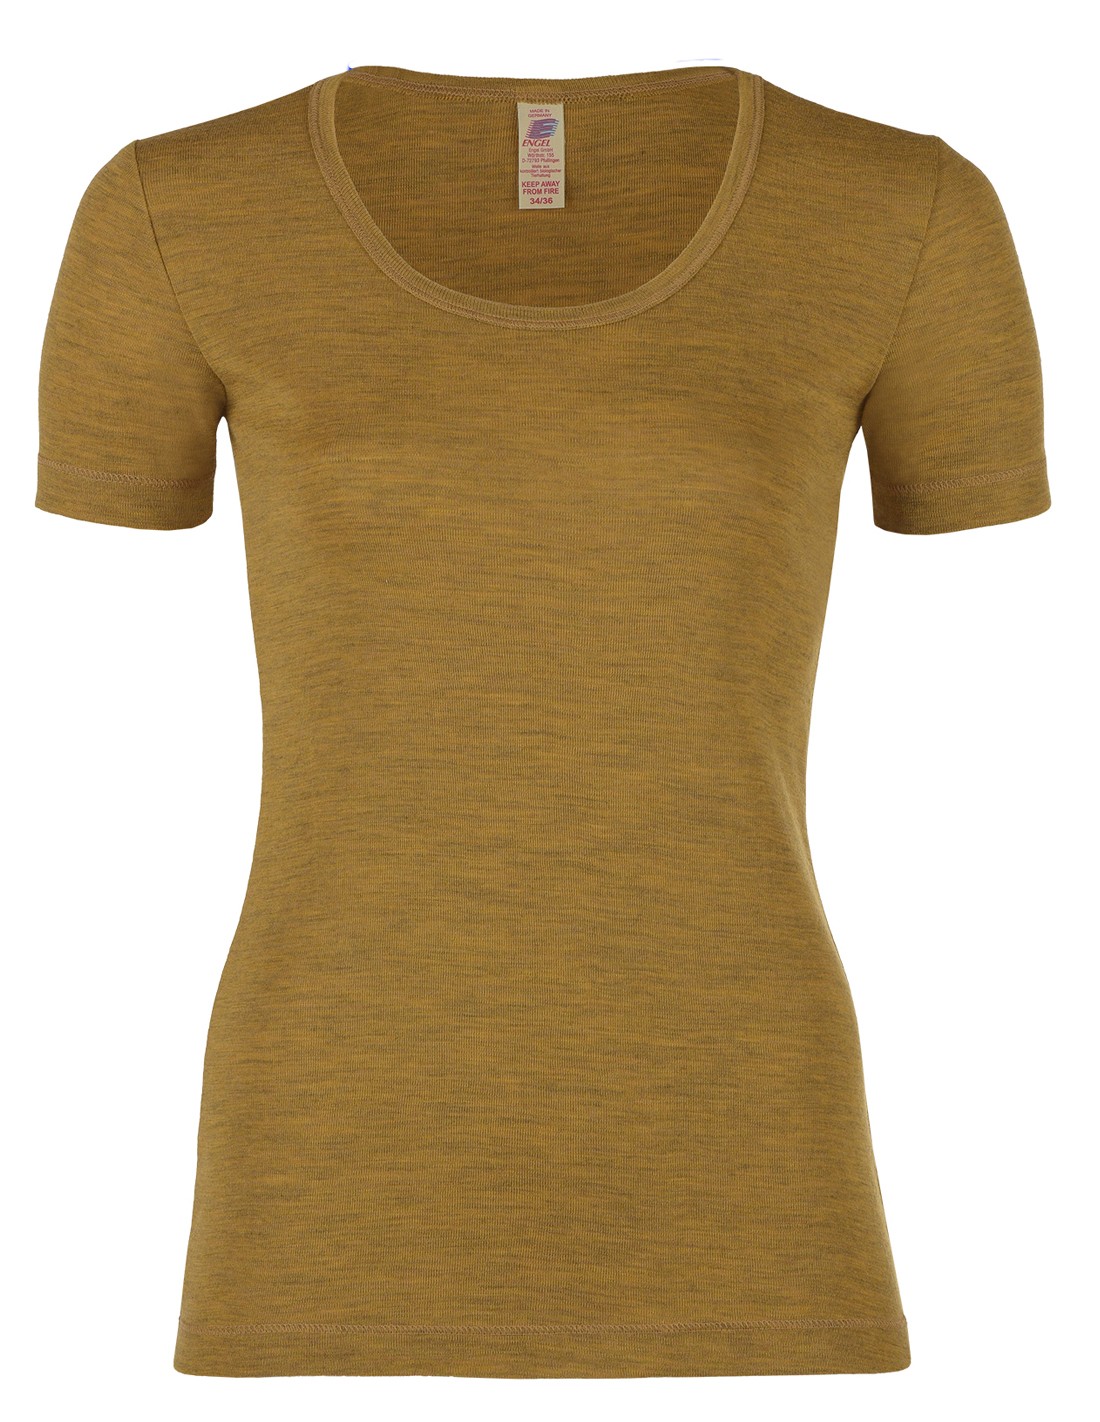 Image of Dames T-Shirt Merino Wol Engel Natur, Kleur Safraan, Maat 34/36 - Small